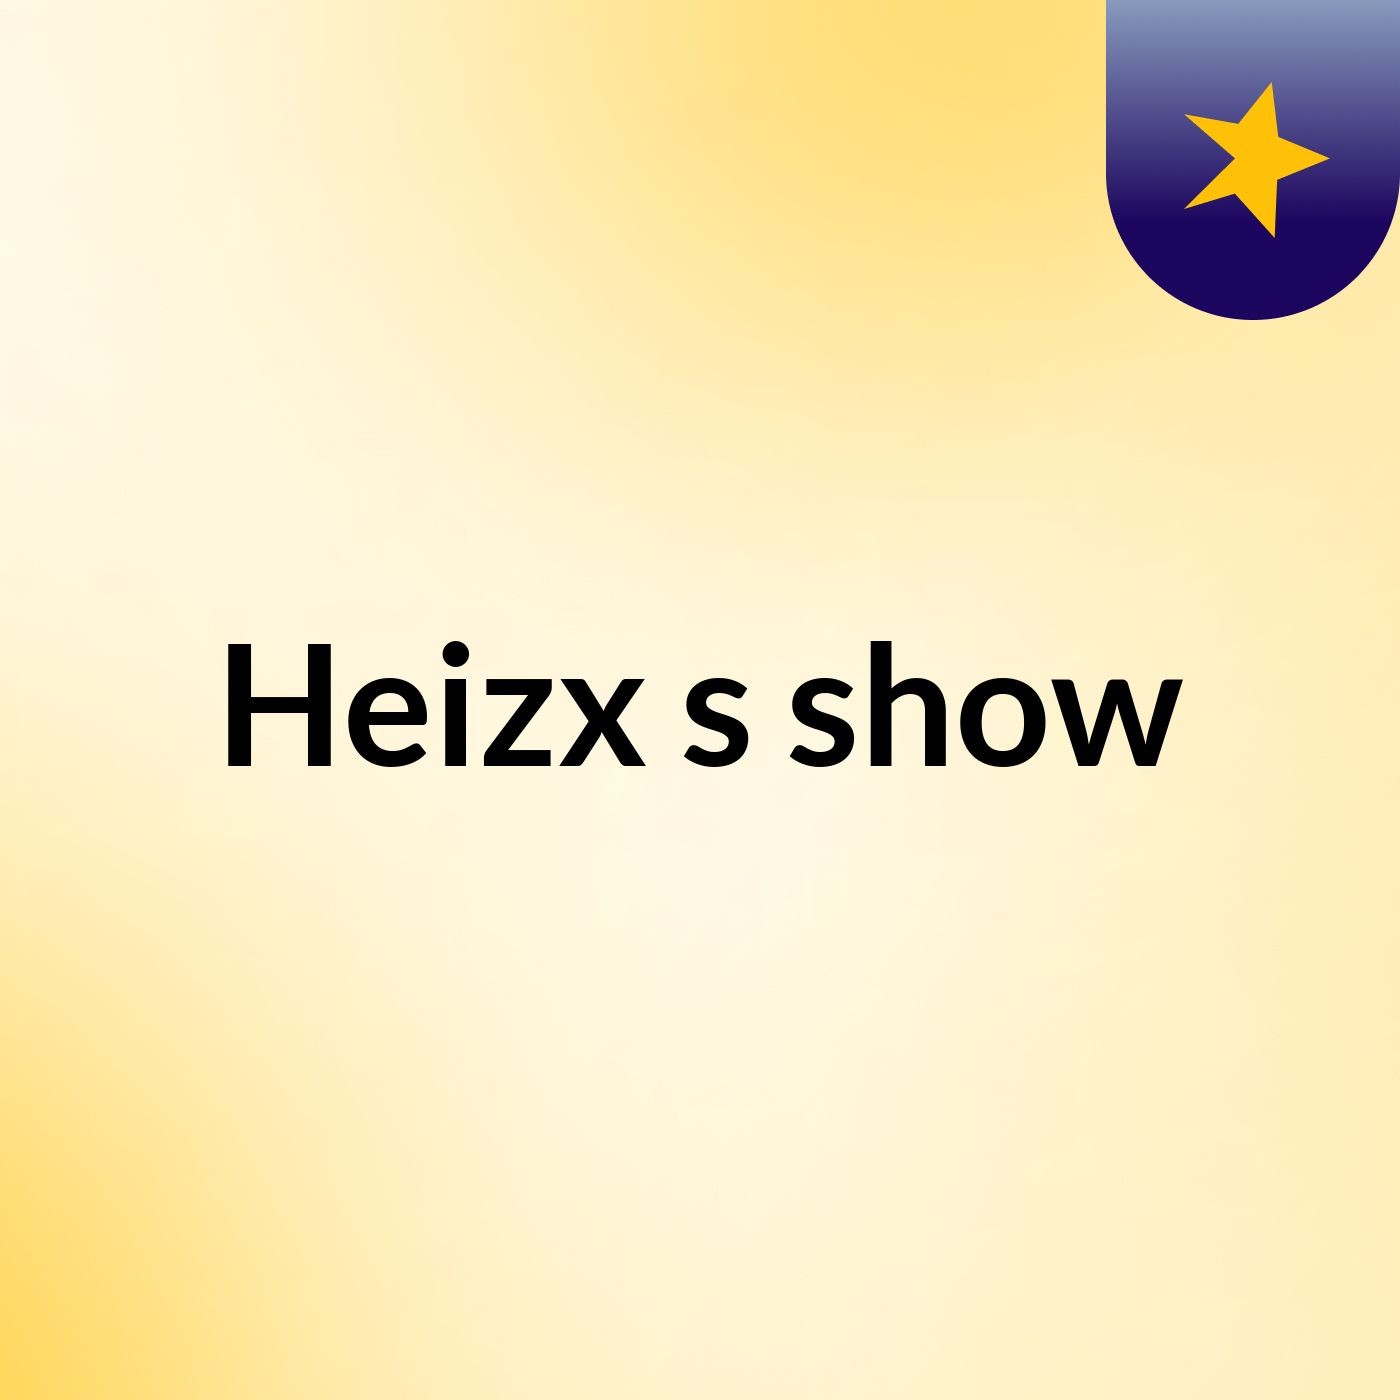 Heizx's show